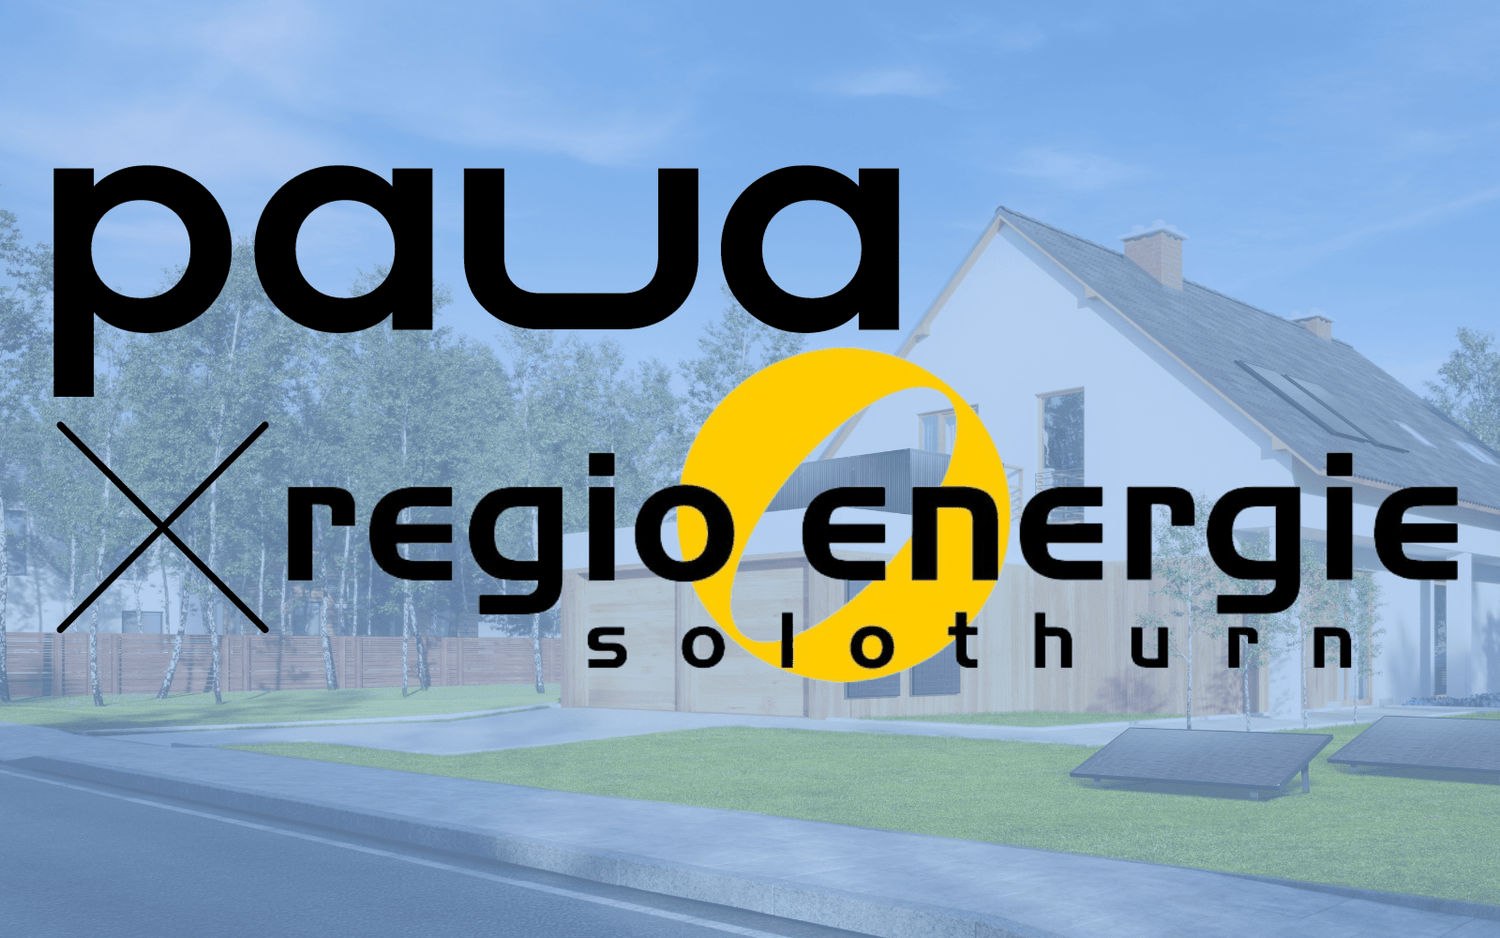 Regio Energie Solothurn und paua - Großer Schritt für die Energiewende - paua Solutions